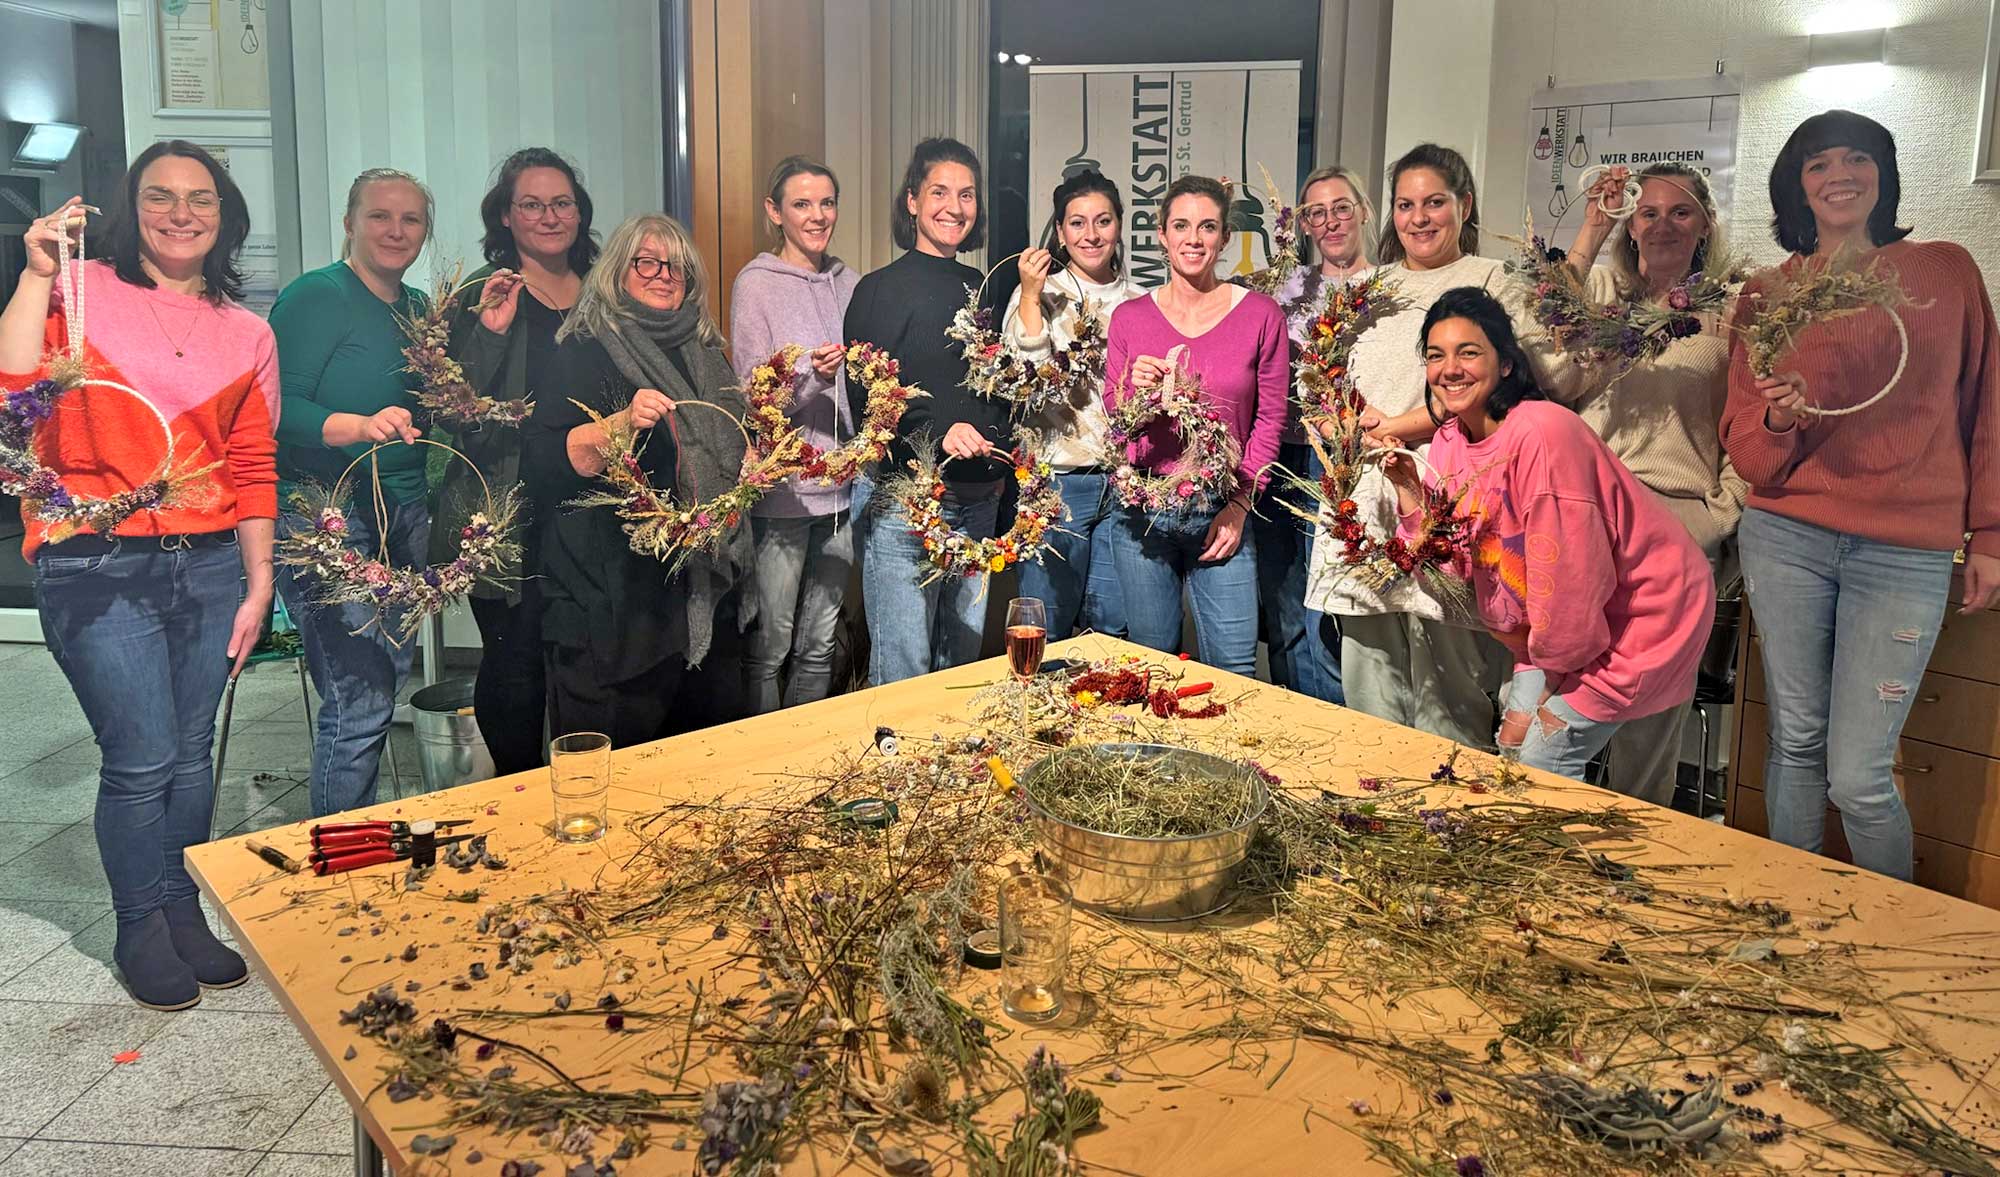 Strahlende Gesichter und stolze Kreationen: Teilnehmer präsentieren vollendete Trockenblumen-Werkstücke